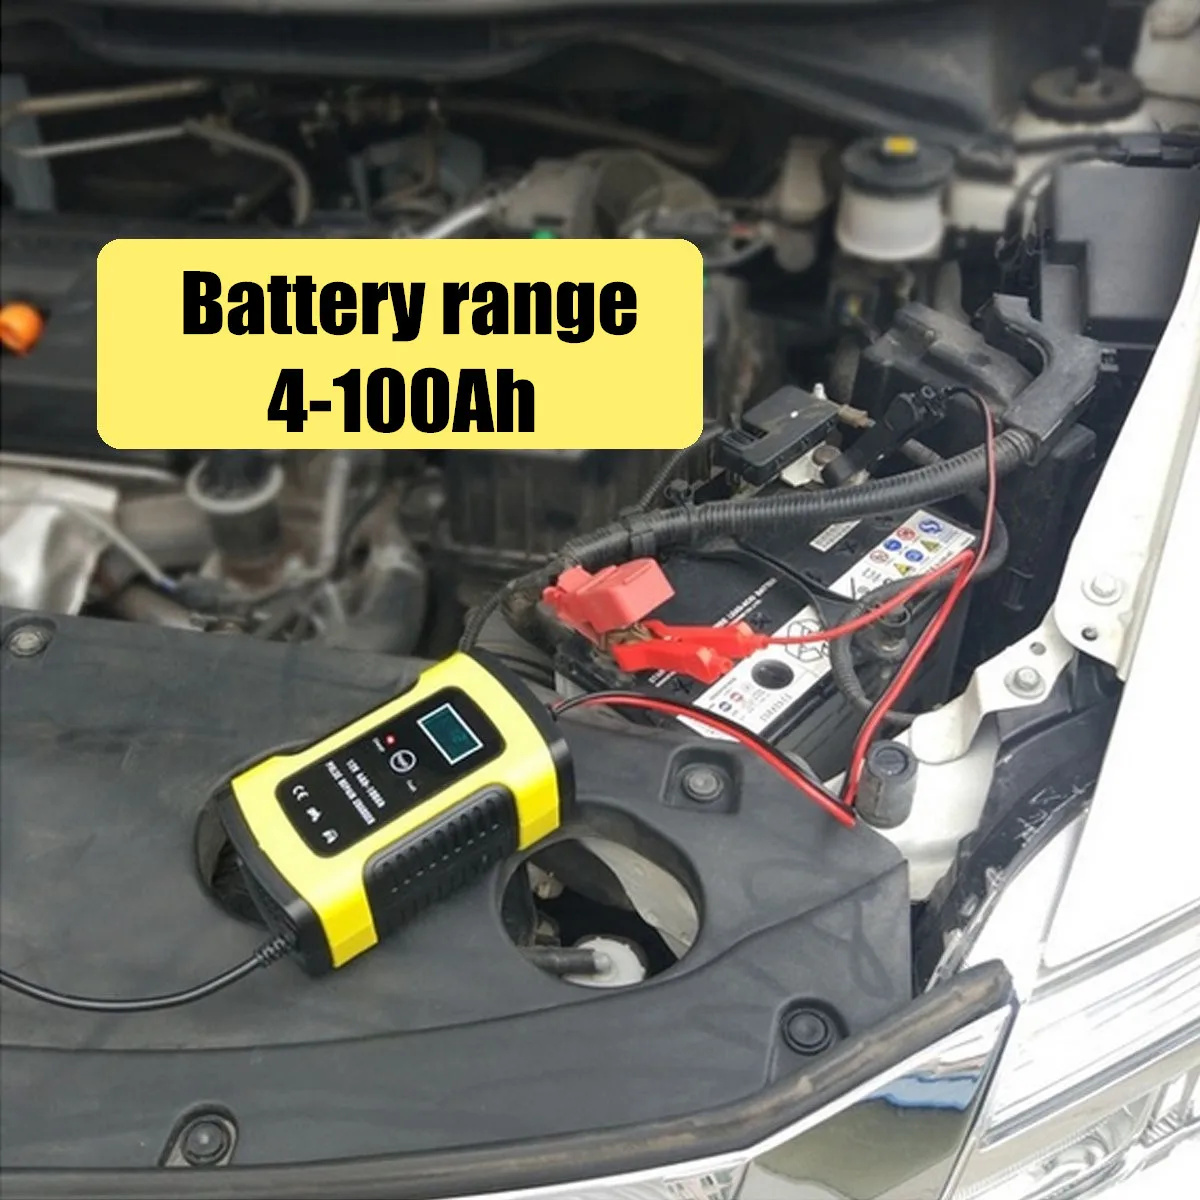 12V 6A ремонт ЖК-дисплей Батарея Зарядное устройство смарт Быстрая зарядка для автомобиля мотоцикла ремонт Тип свинцово-кислотный Батарея Agm гель мокрый батареи зарядки